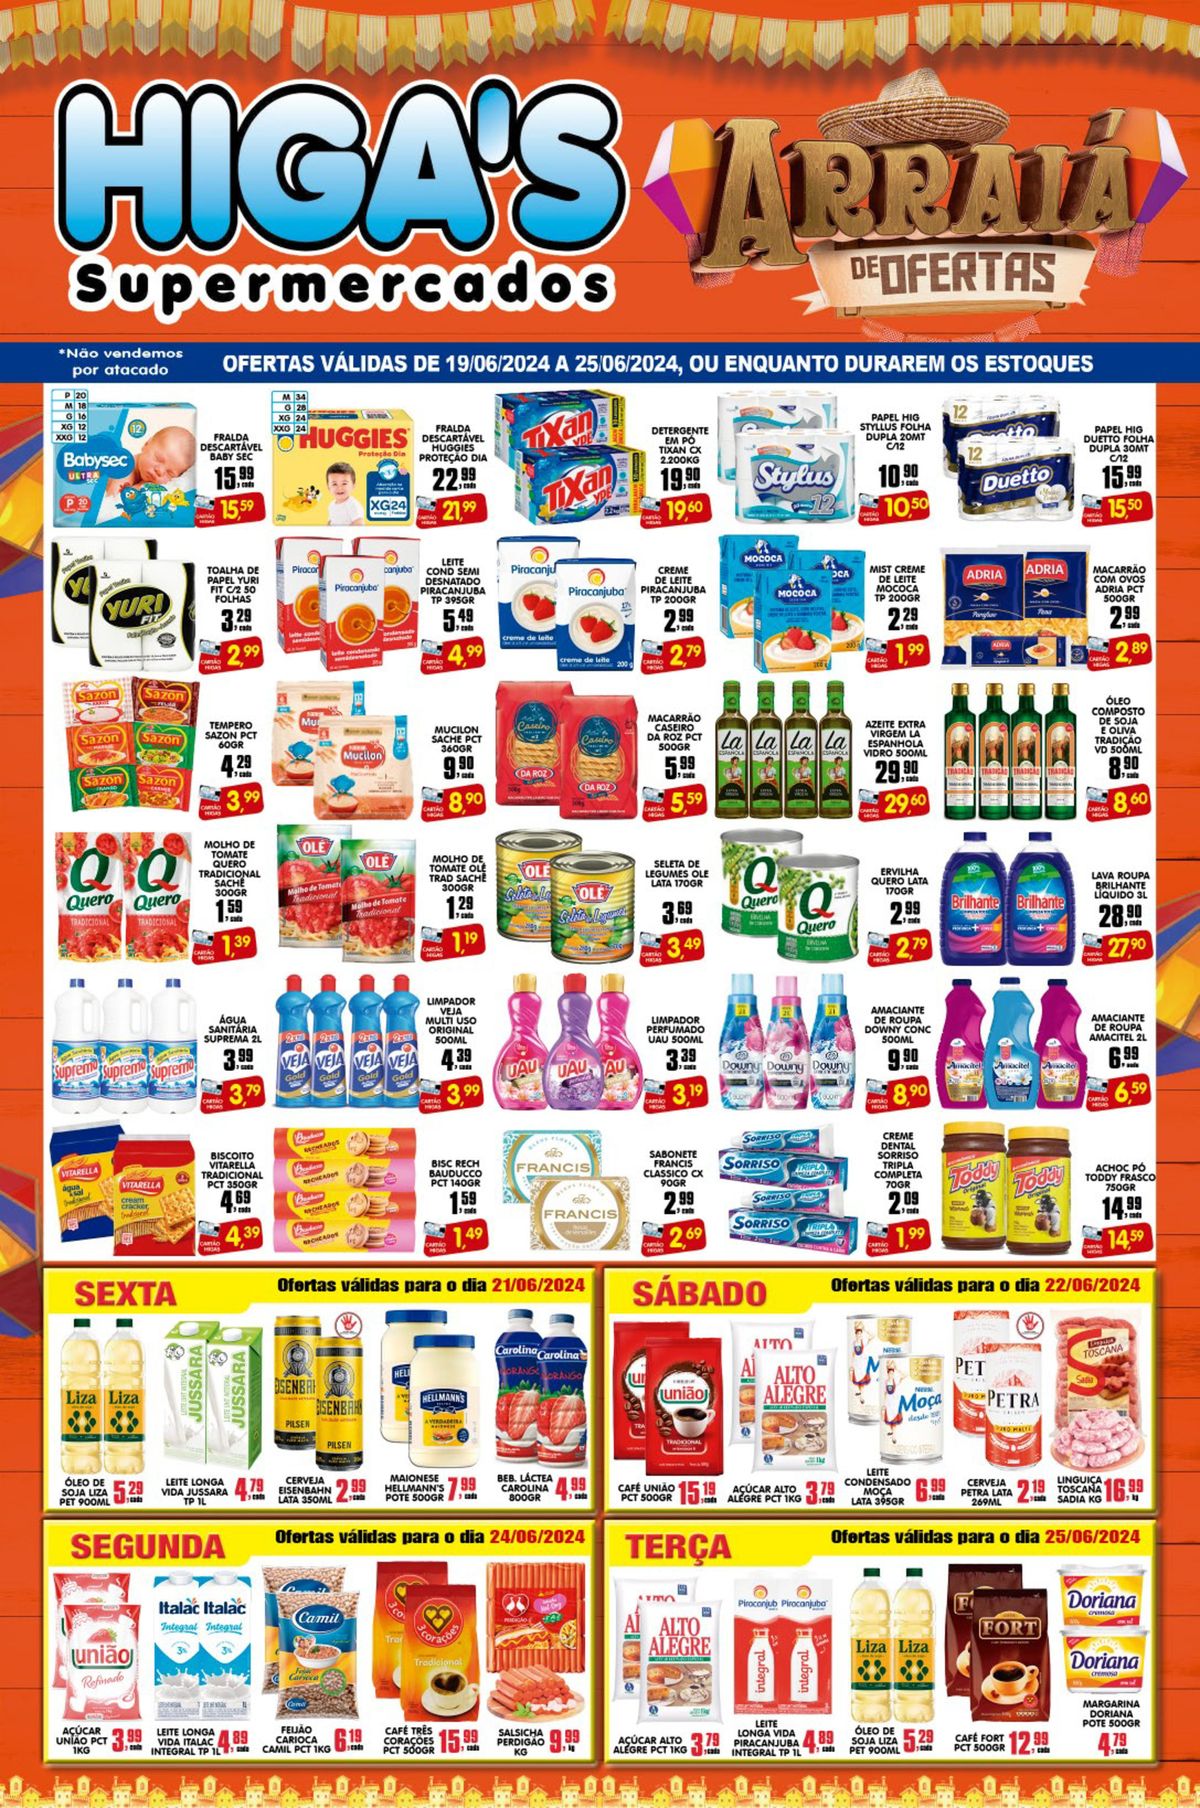 Promoção de alimentos e produtos de limpeza no Supermercado Higas